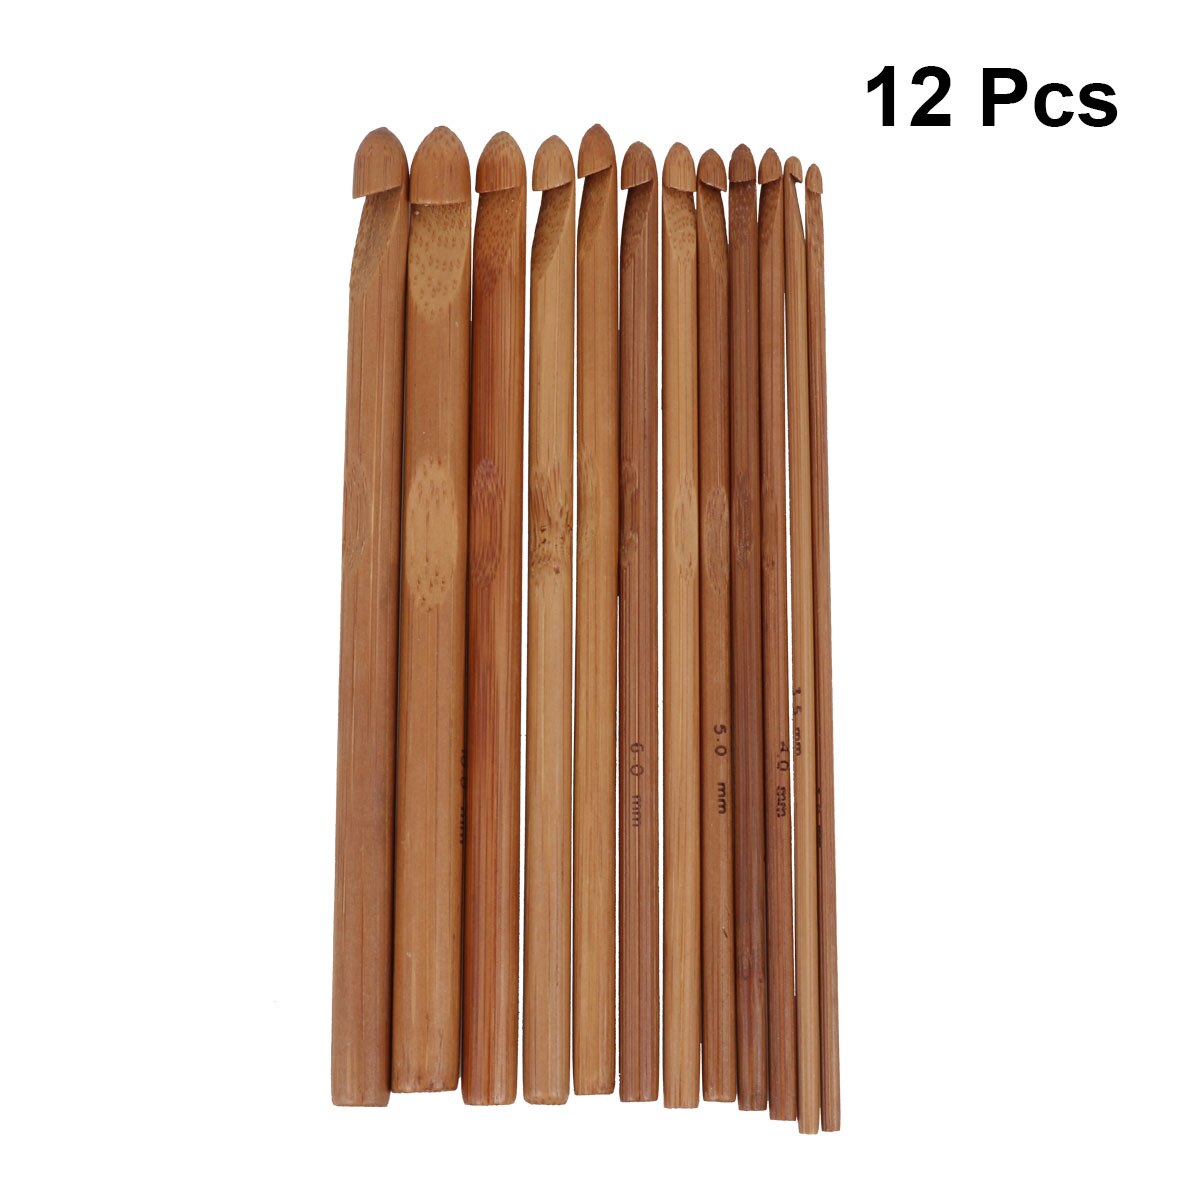 12 Stuks Verschillende-Sized Bamboe Haaknaalden Breinaalden (3.0Mm Tot 10Mm)